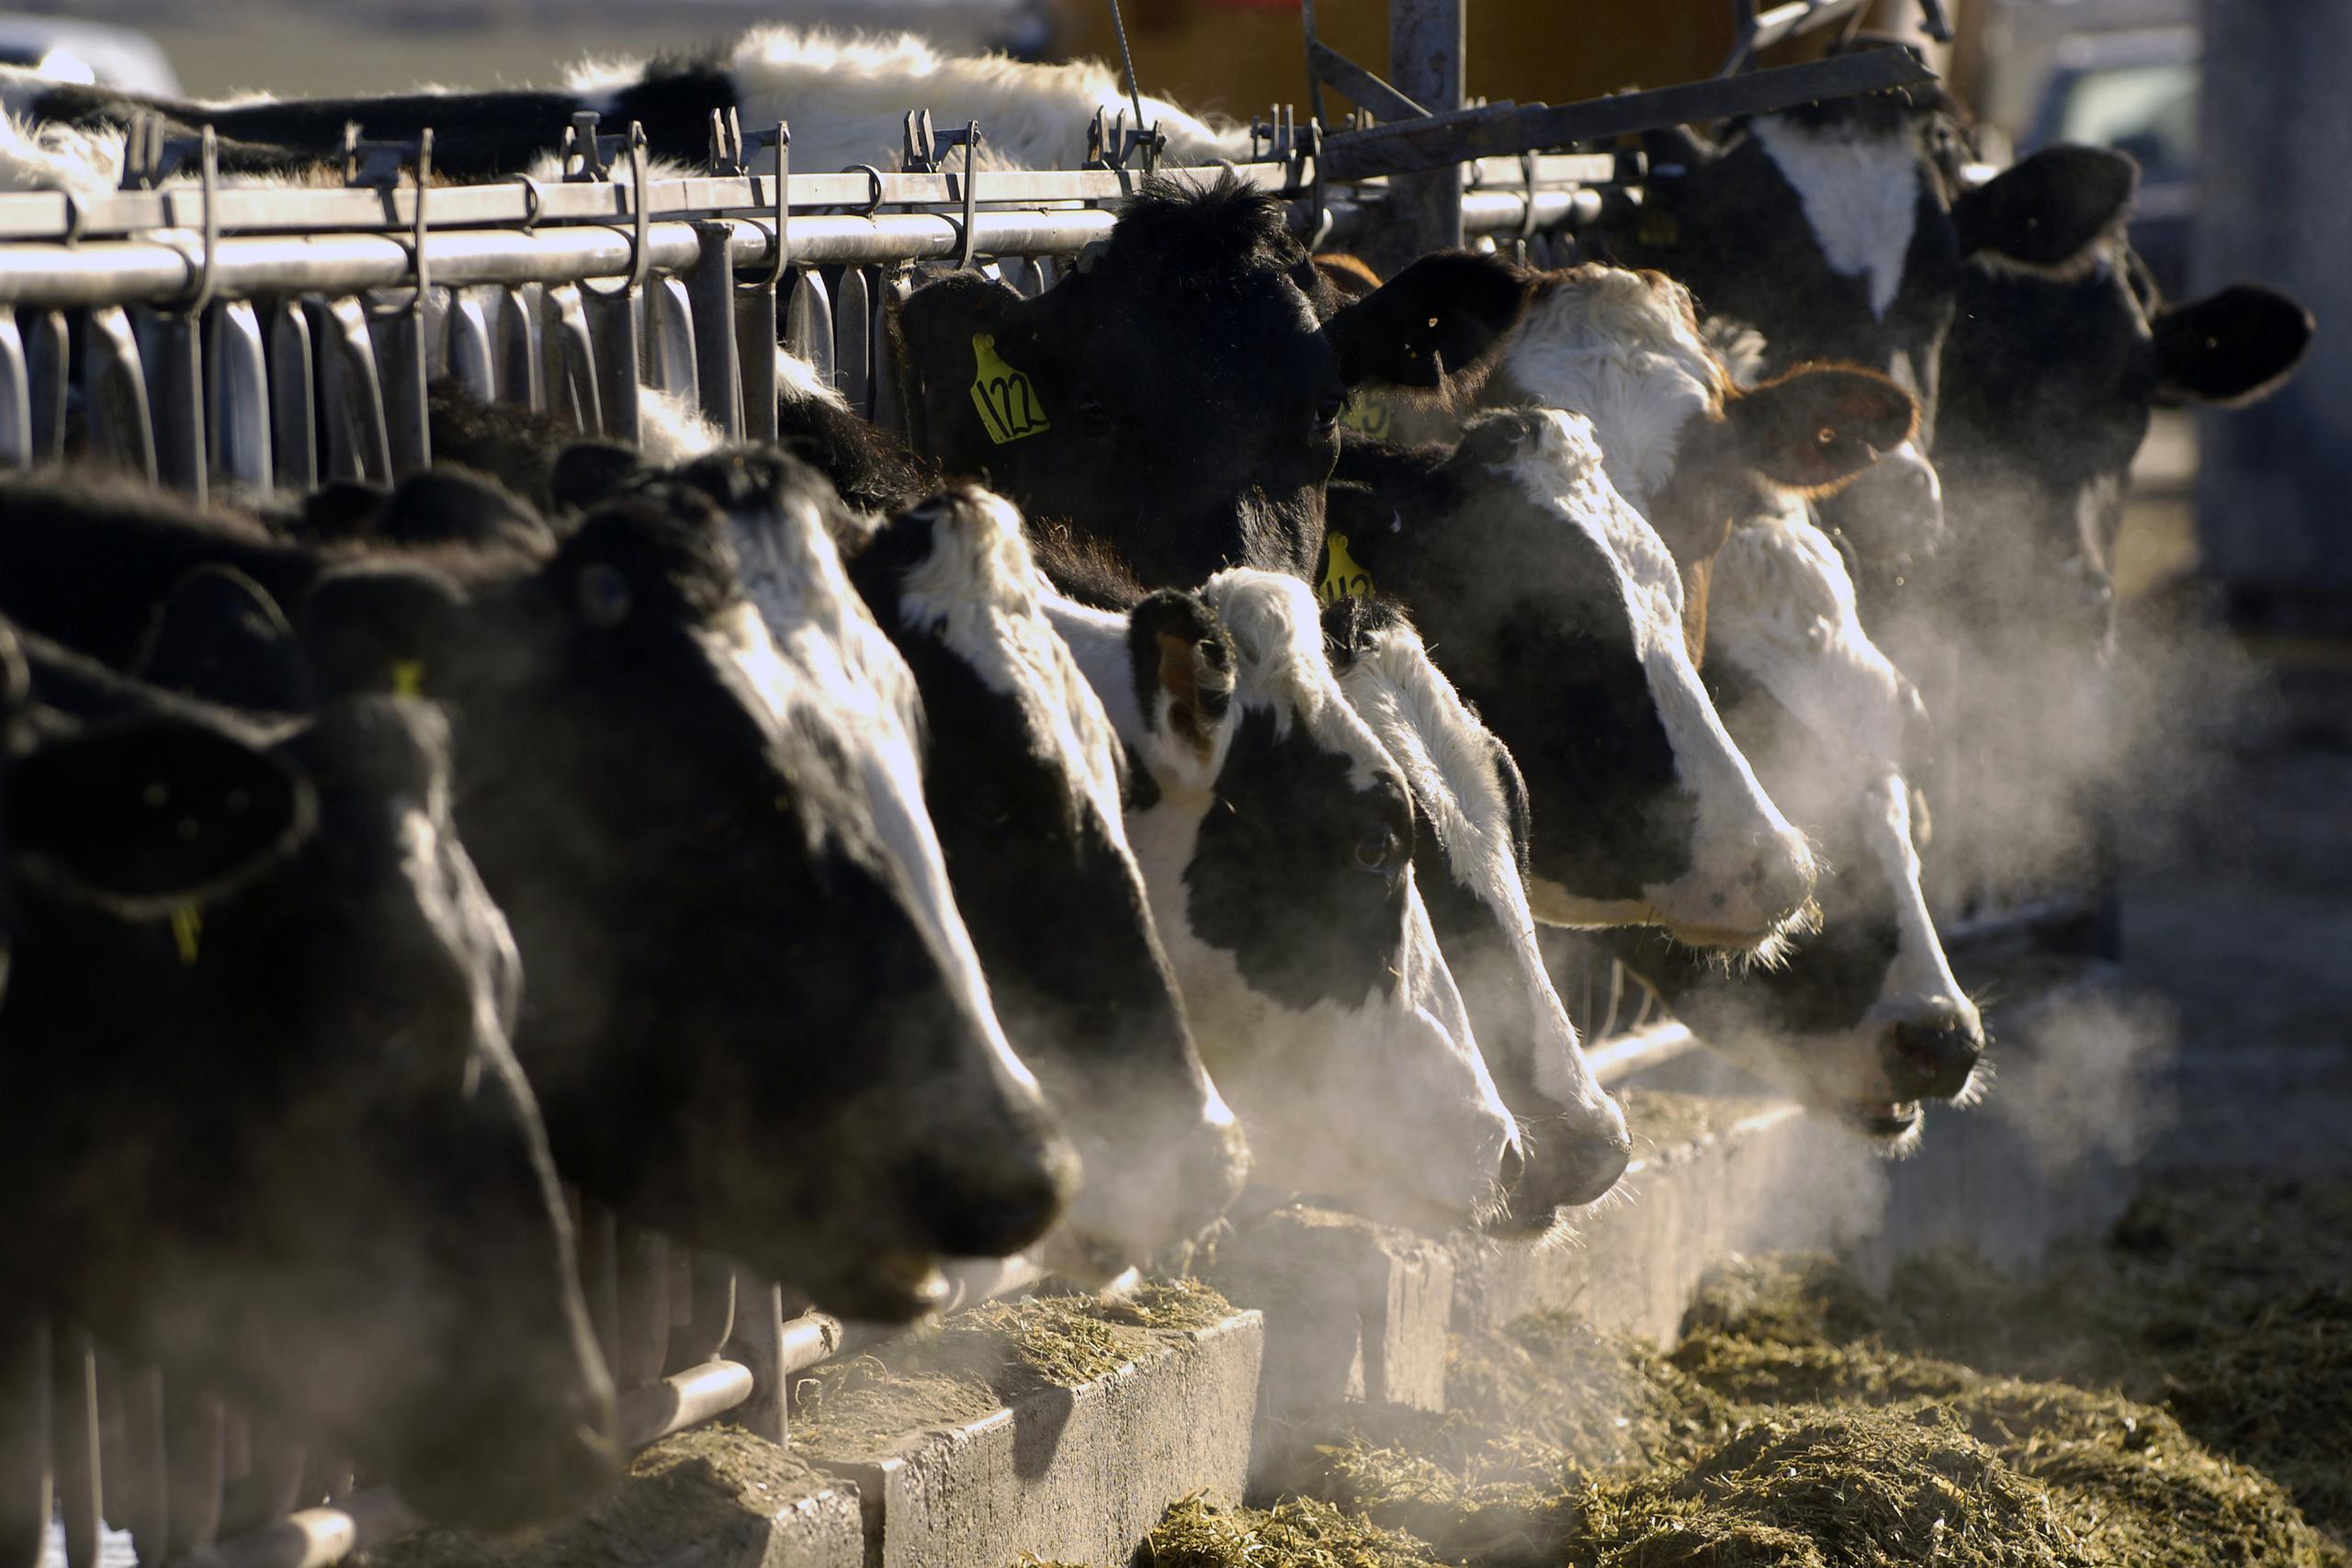 El USDA aseguró que la carne de la vaca contaminada no llegó al suministro alimentario y que aún cuando eso ocurriera, cocinar la carne a una temperatura interna de 165 grados Fahrenheit mata el virus.